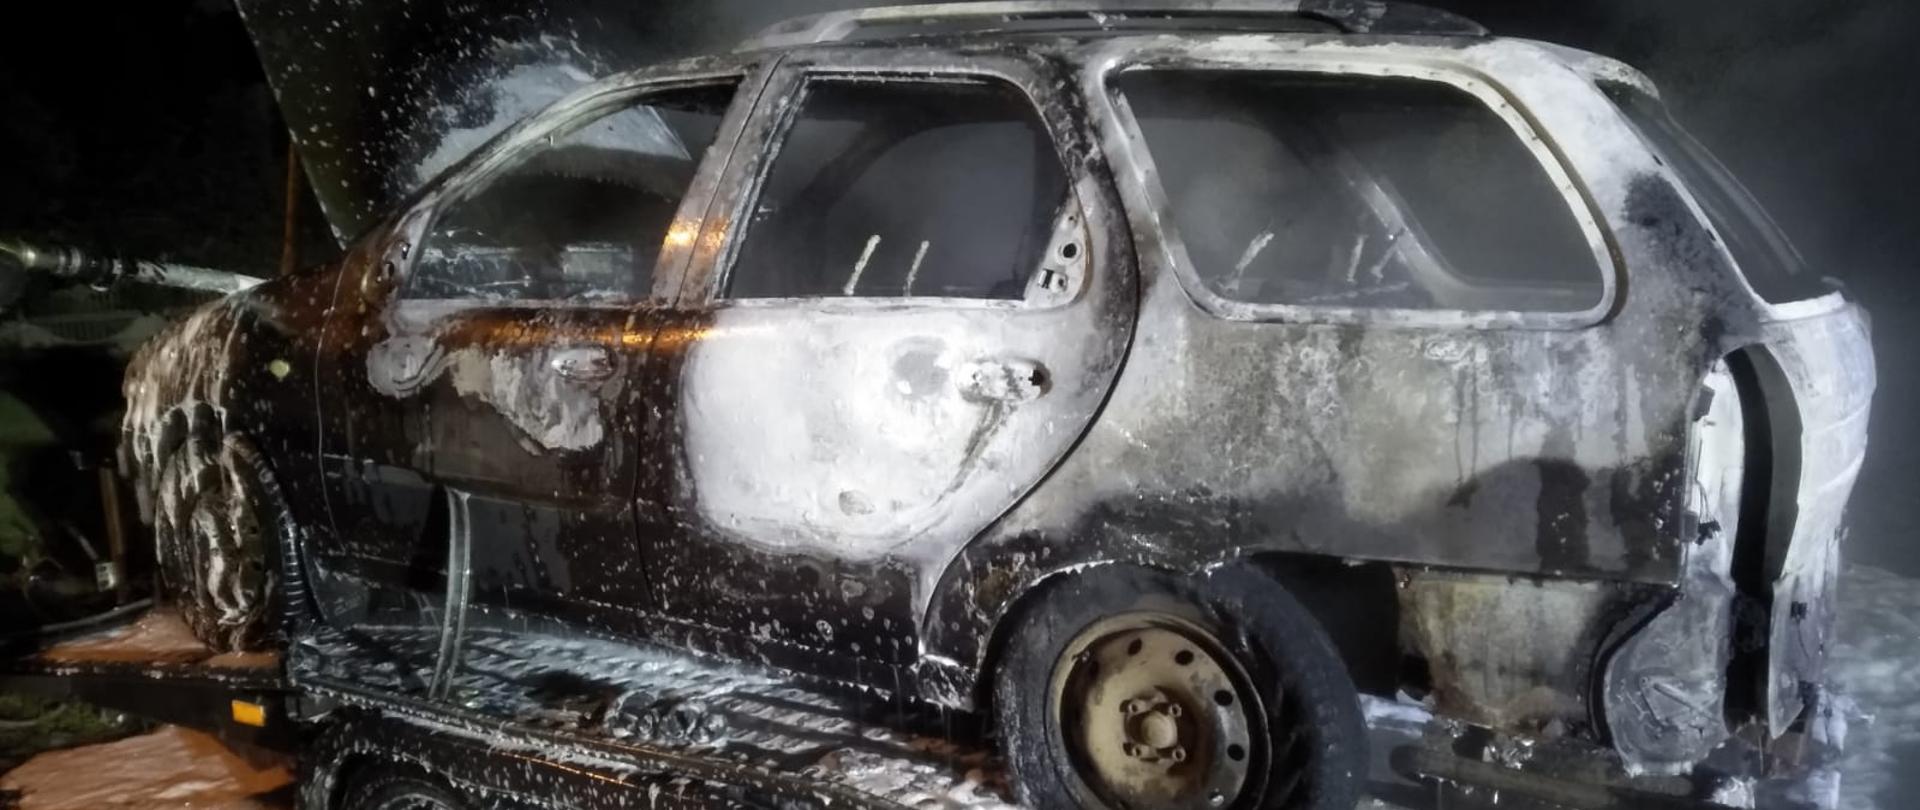 Kompletnie spalony samochód osobowy stojący na lawecie samochodowej pokryty pianą gaśniczą.